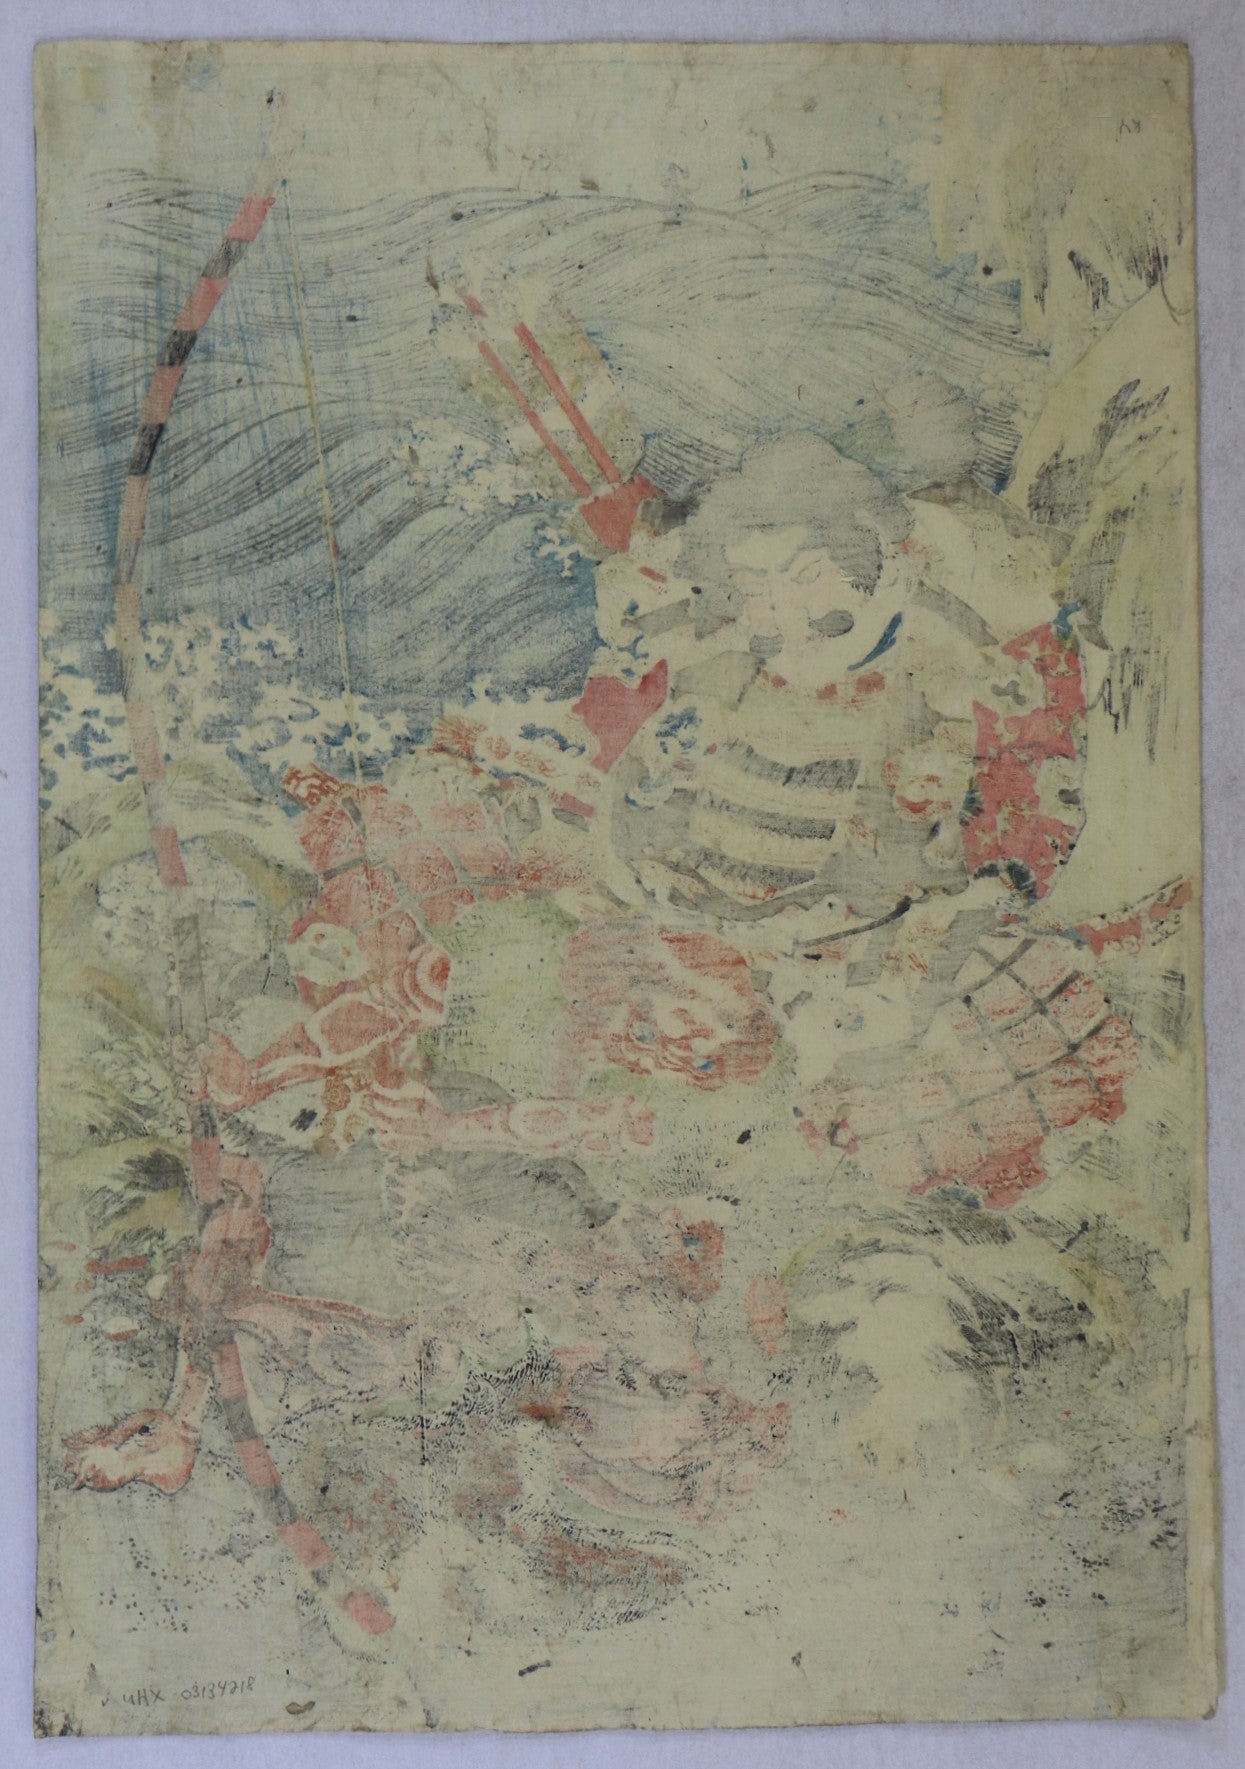 Minamoto no Tametomo by Kunisada / Minamoto no Tametomo par Kunisada (1825)